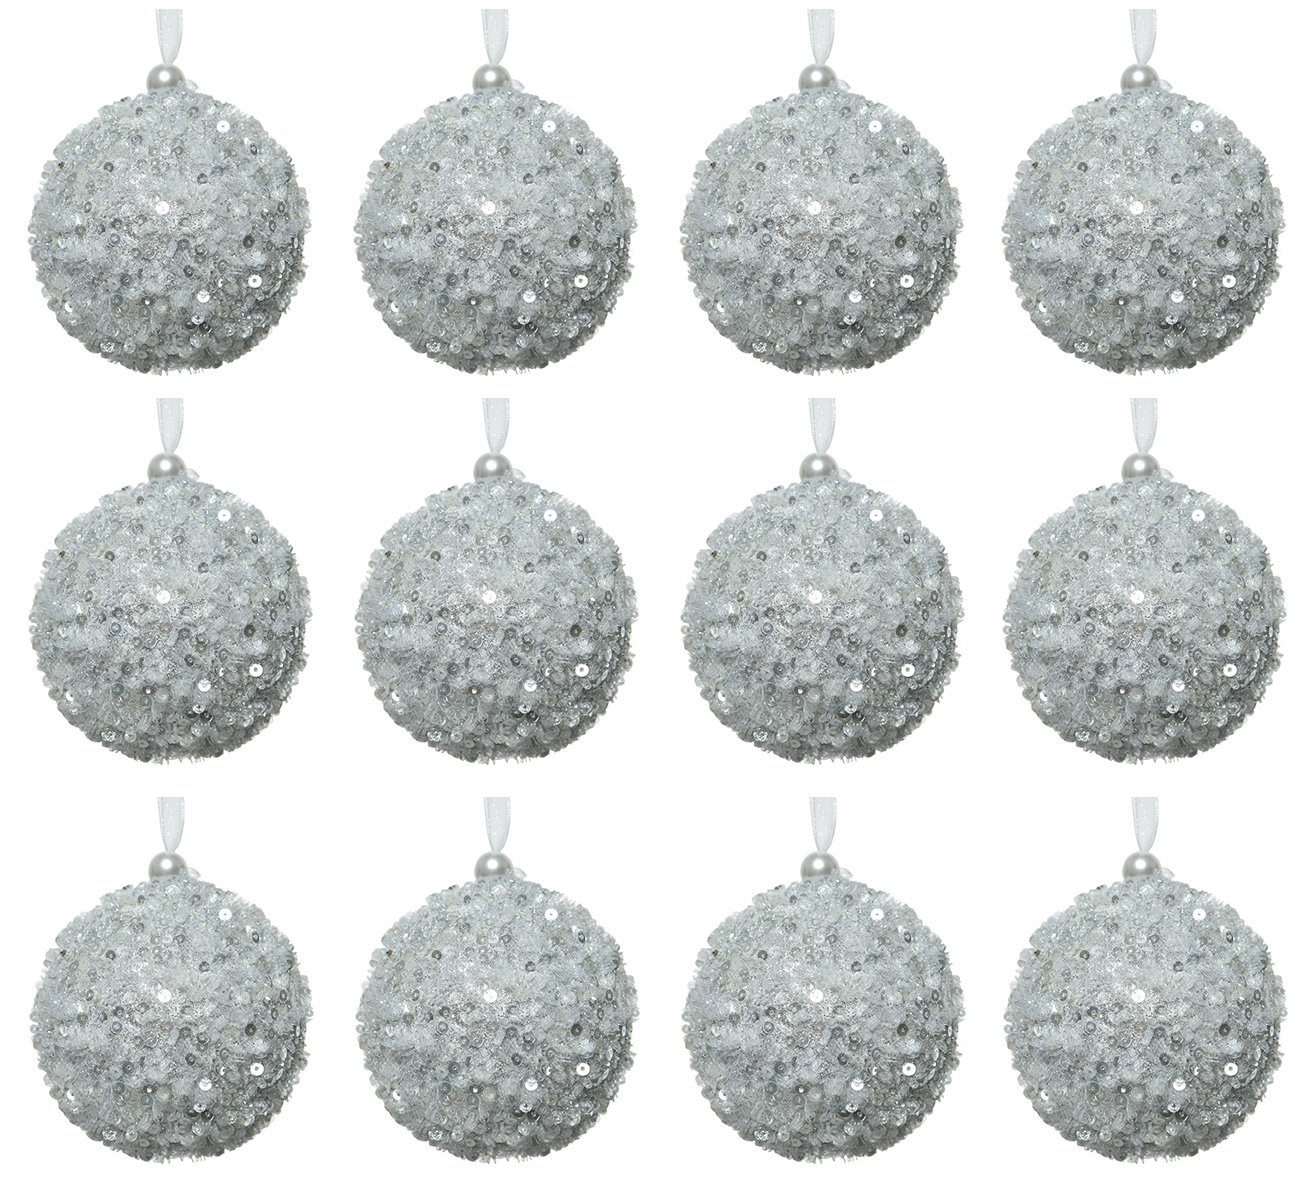 Decoris season decorations Weihnachtsbaumkugel, Weihnachtskugeln Kunststoff 8cm Pailletten / Glitzer 12er Set - Silber